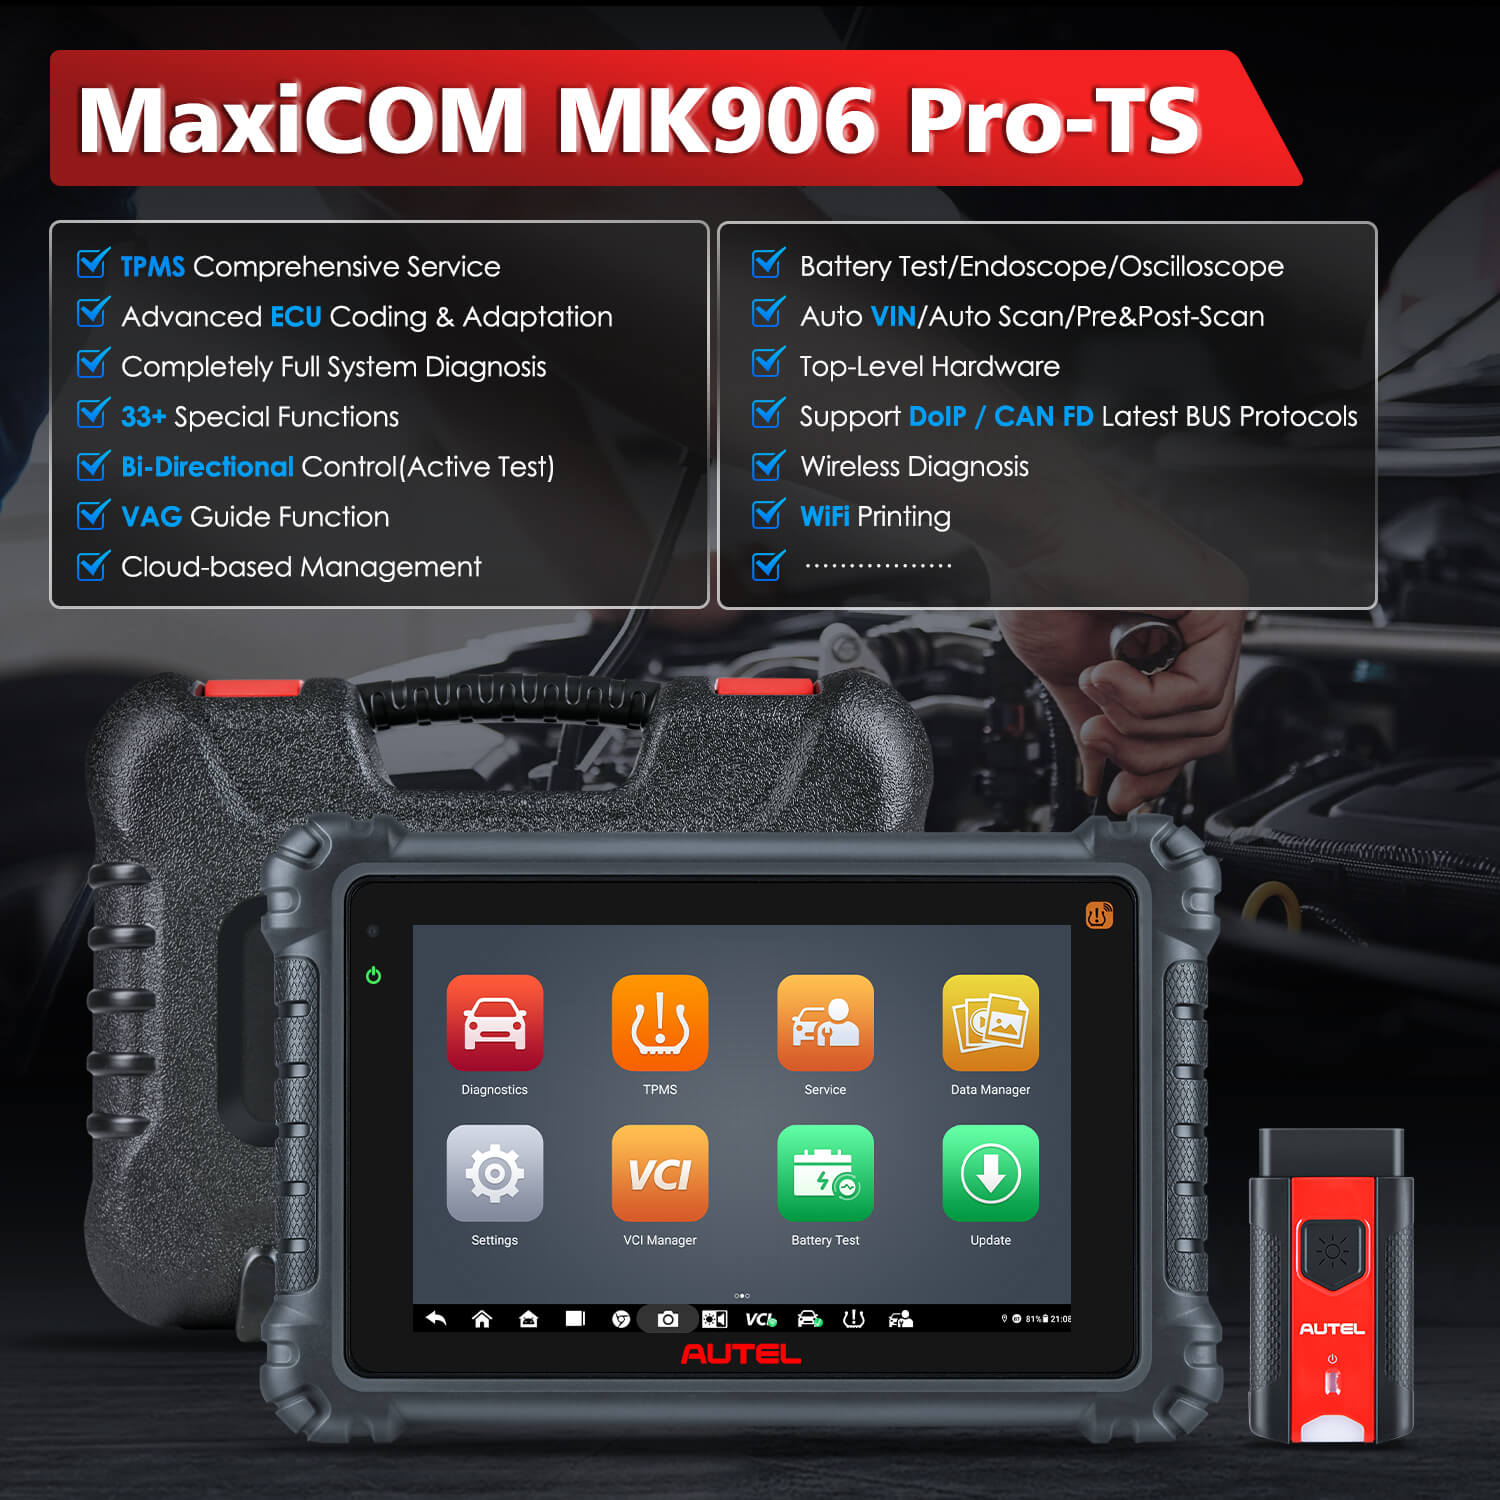 AUTEL MAXICOM MK906 PRO-TS Główne cechy